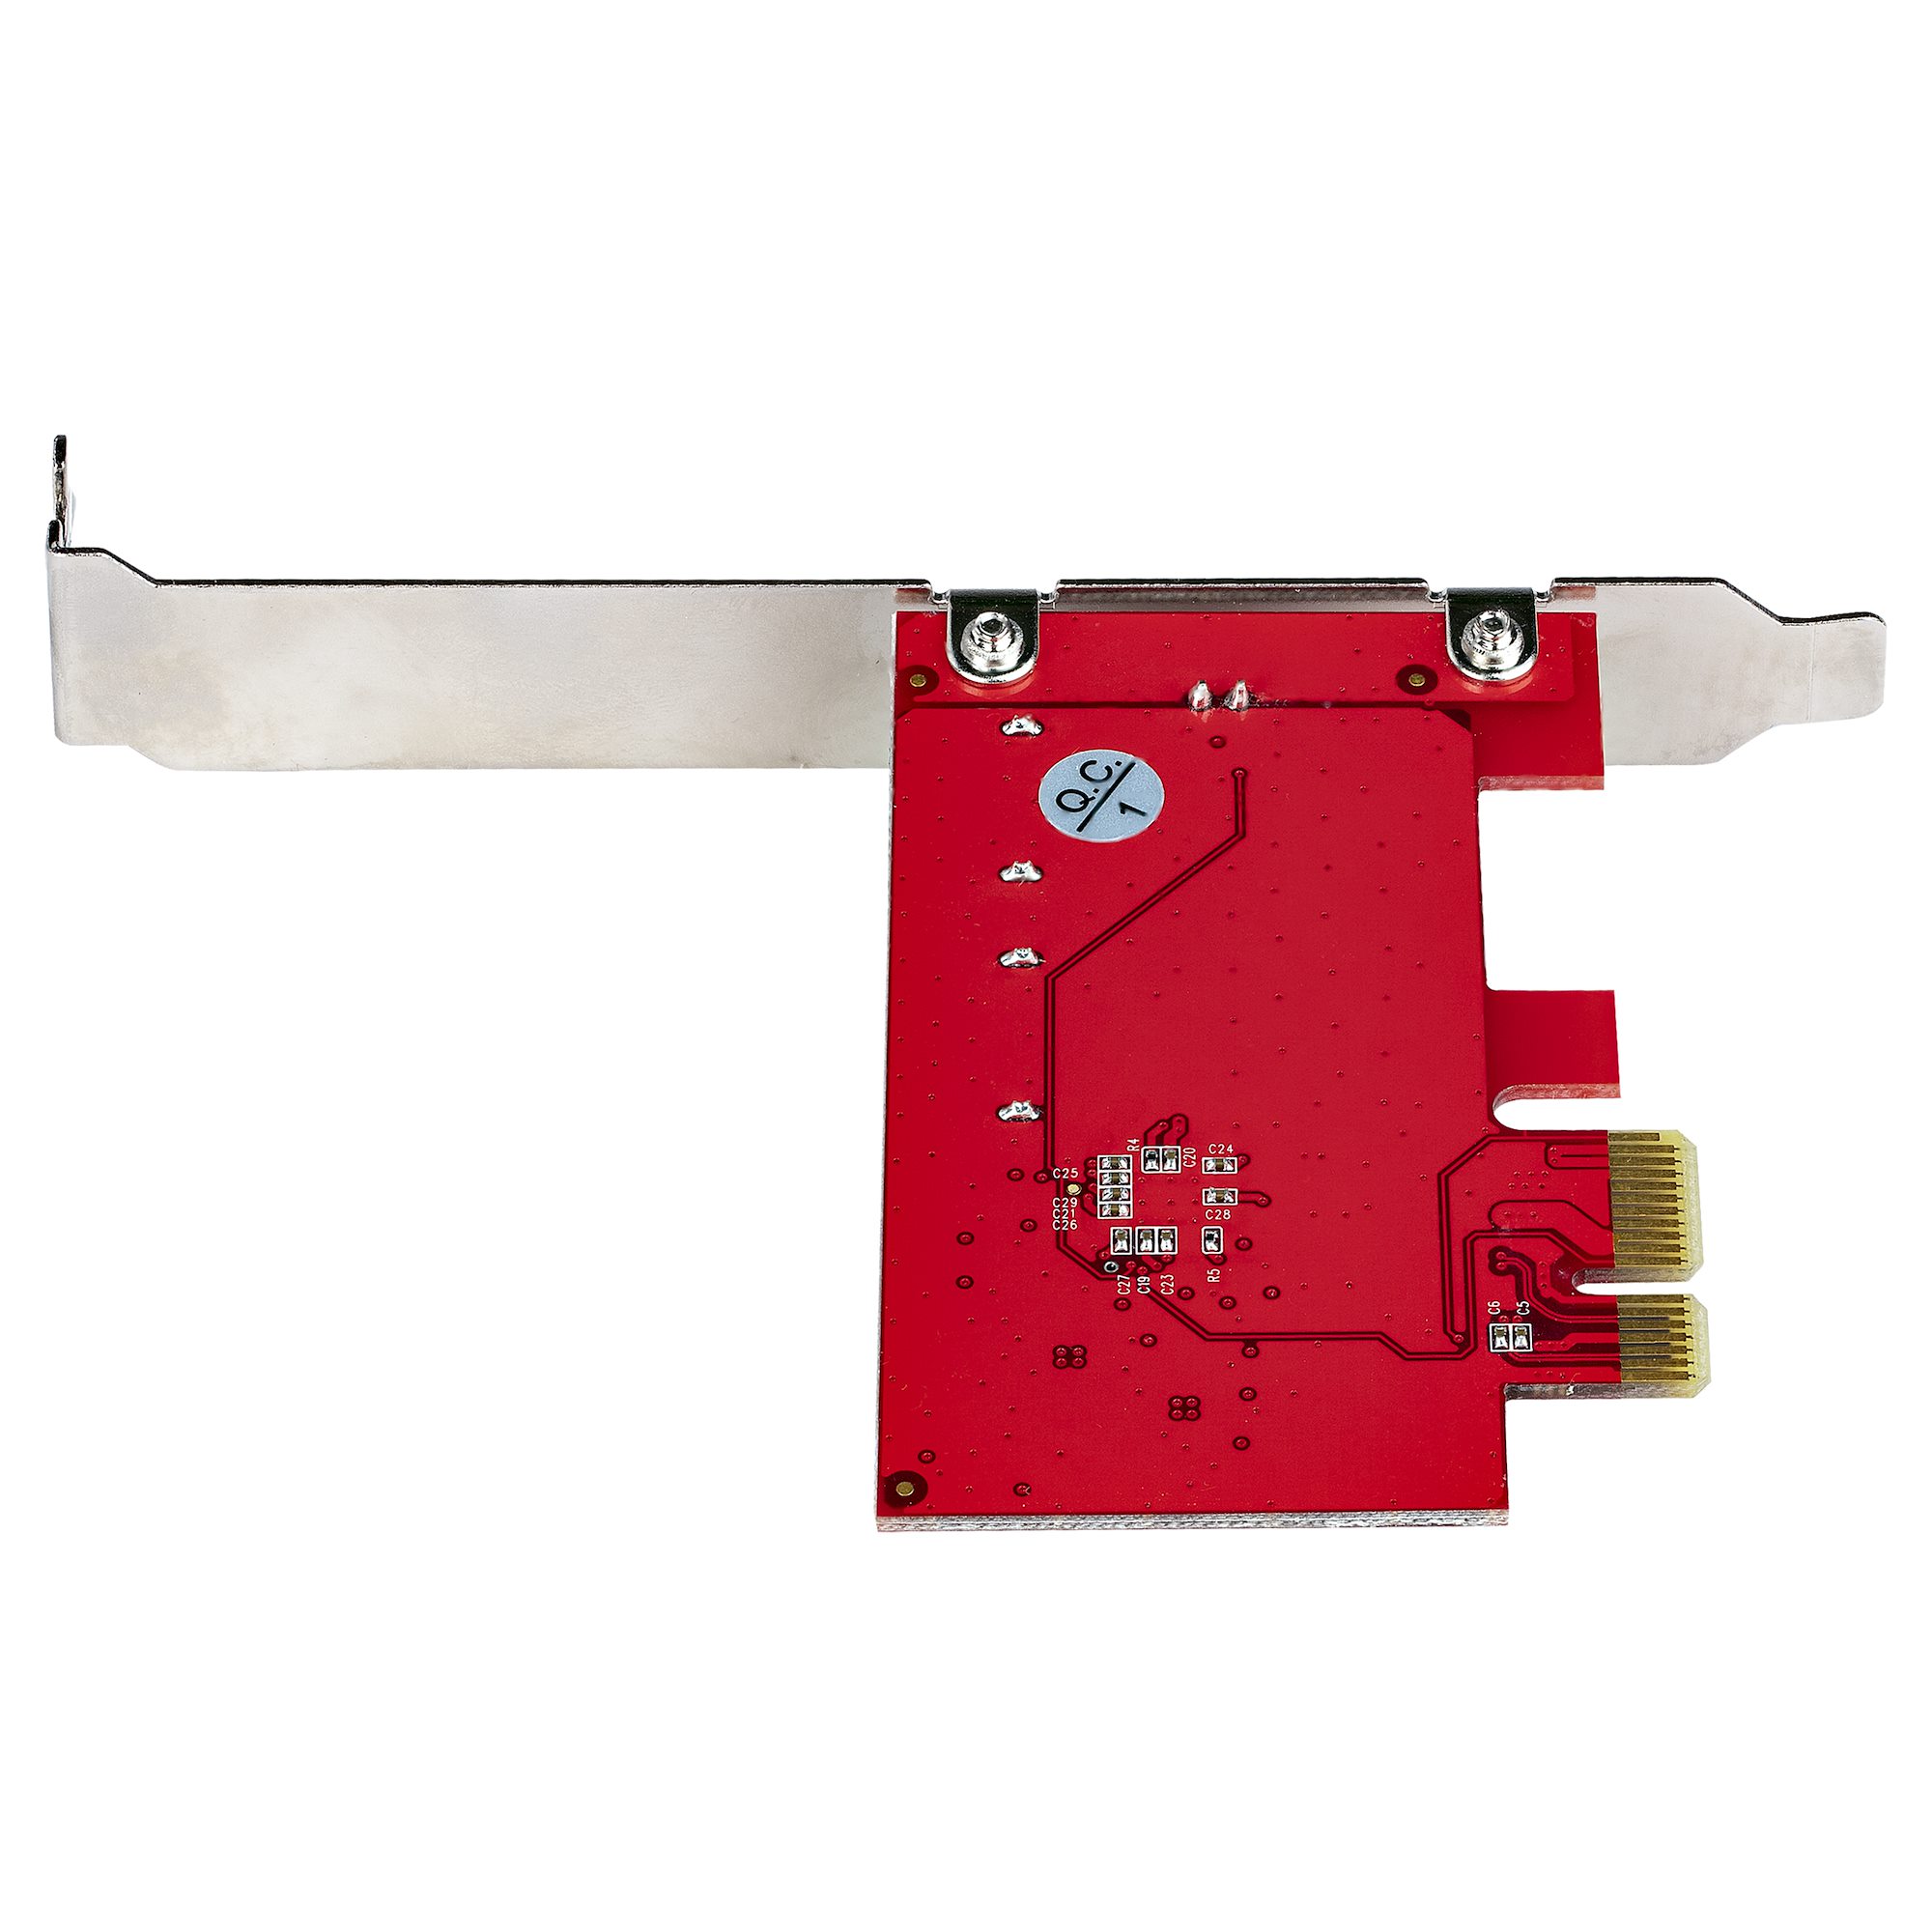 SATA PCIe Card, 2 Ports, 6Gbps, Non-RAID - SATA Controller Cards